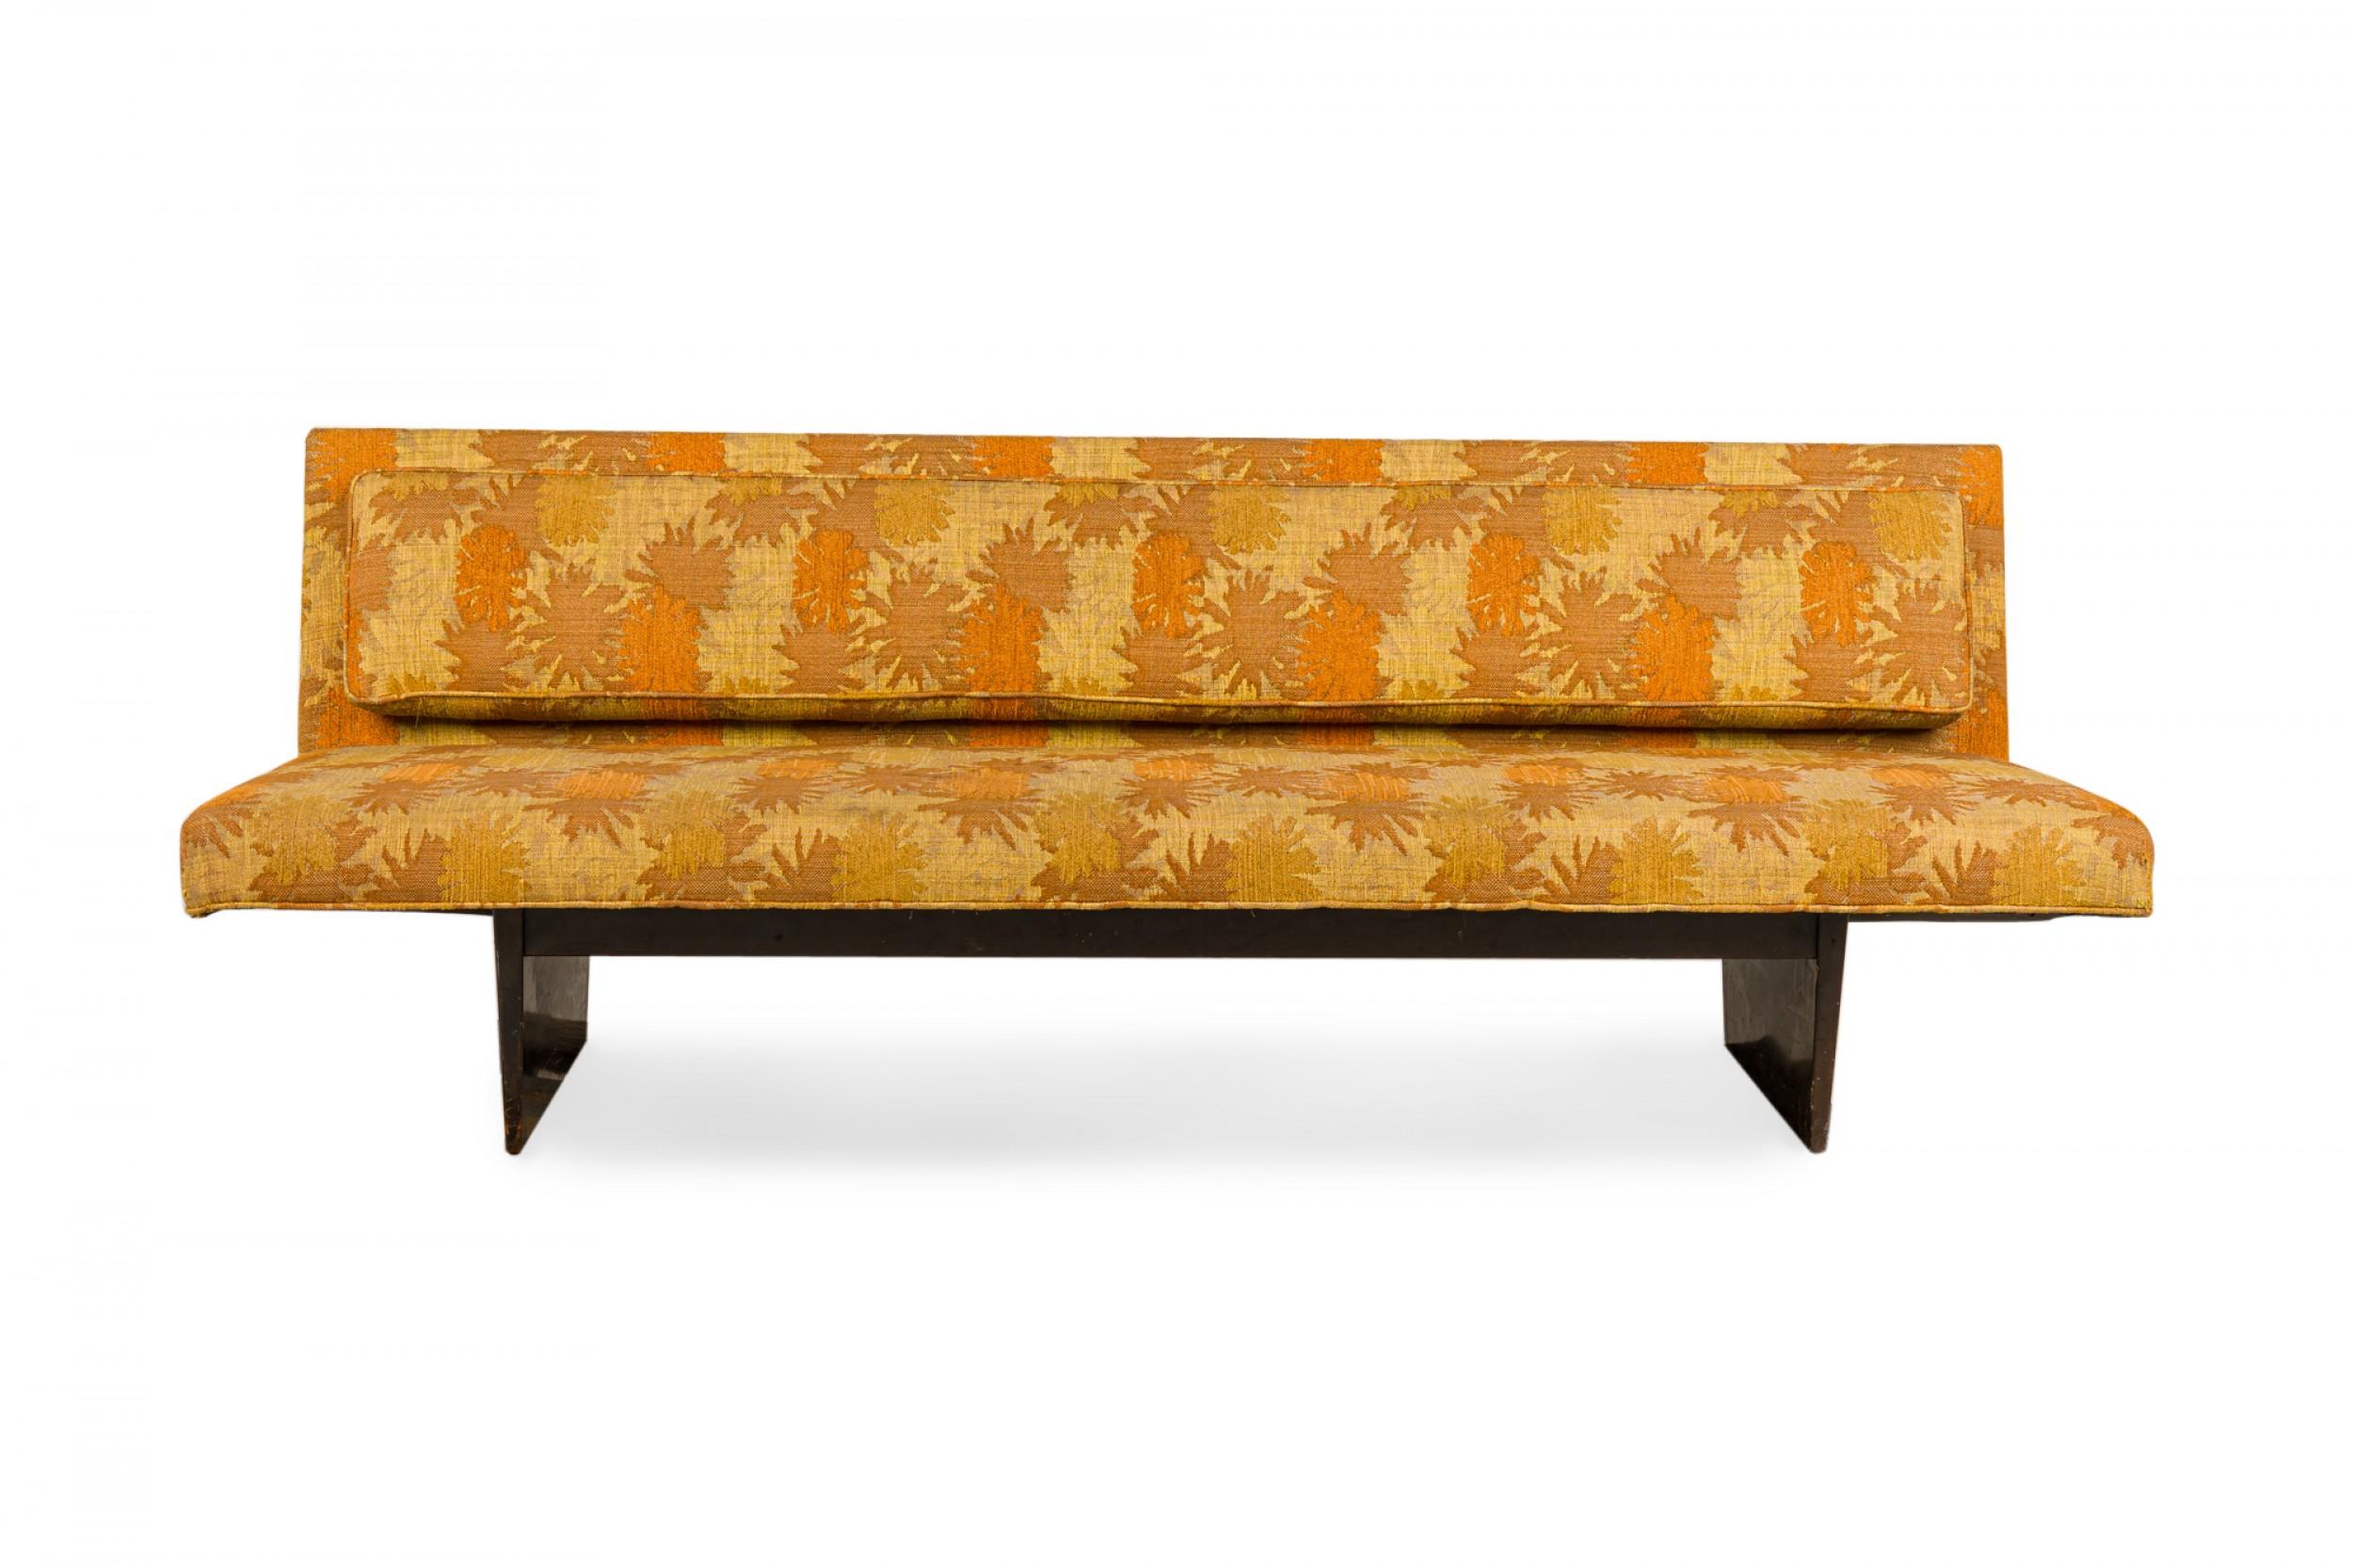 Canapé américain du milieu du siècle avec une tapisserie à motifs de soleils orange, jaune et or, reposant sur une base de traîneau en bois ébonisé. (HARVEY PROBBER).
 